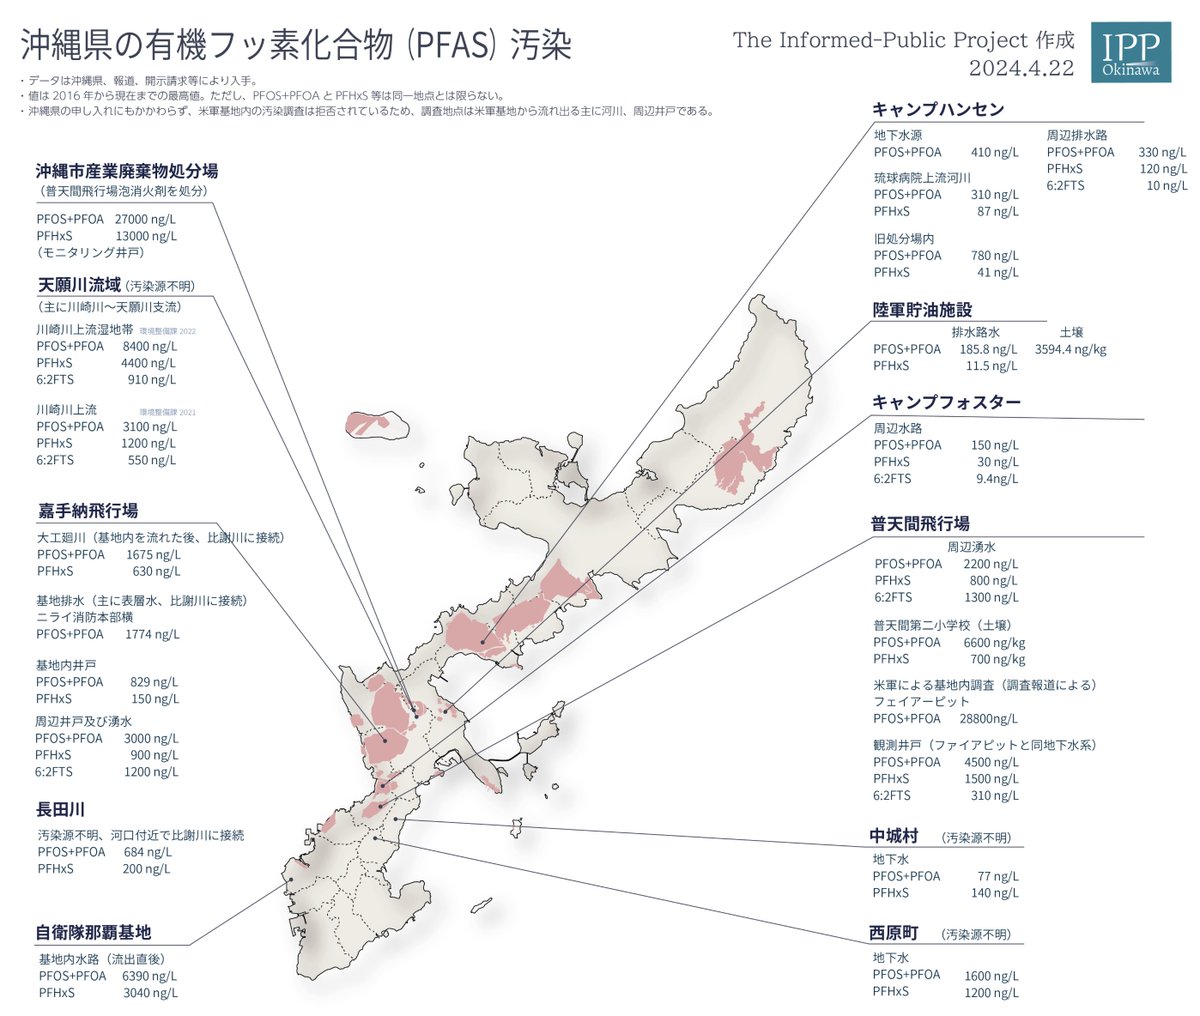 #PFAS汚染 めっちゃ深刻

「このマップでわかるのは、沖縄は小さな狭い島嶼に #米軍基地 がひしめいており、汚染を受け止めるキャパシティーは本当にない、ということ」

コレ、#沖縄 だけの問題じゃない
青森、東京、神奈川、京都、広島…
基地を抱える自治体は調査すべきッスipp.okinawa/2024/04/25/pfa…